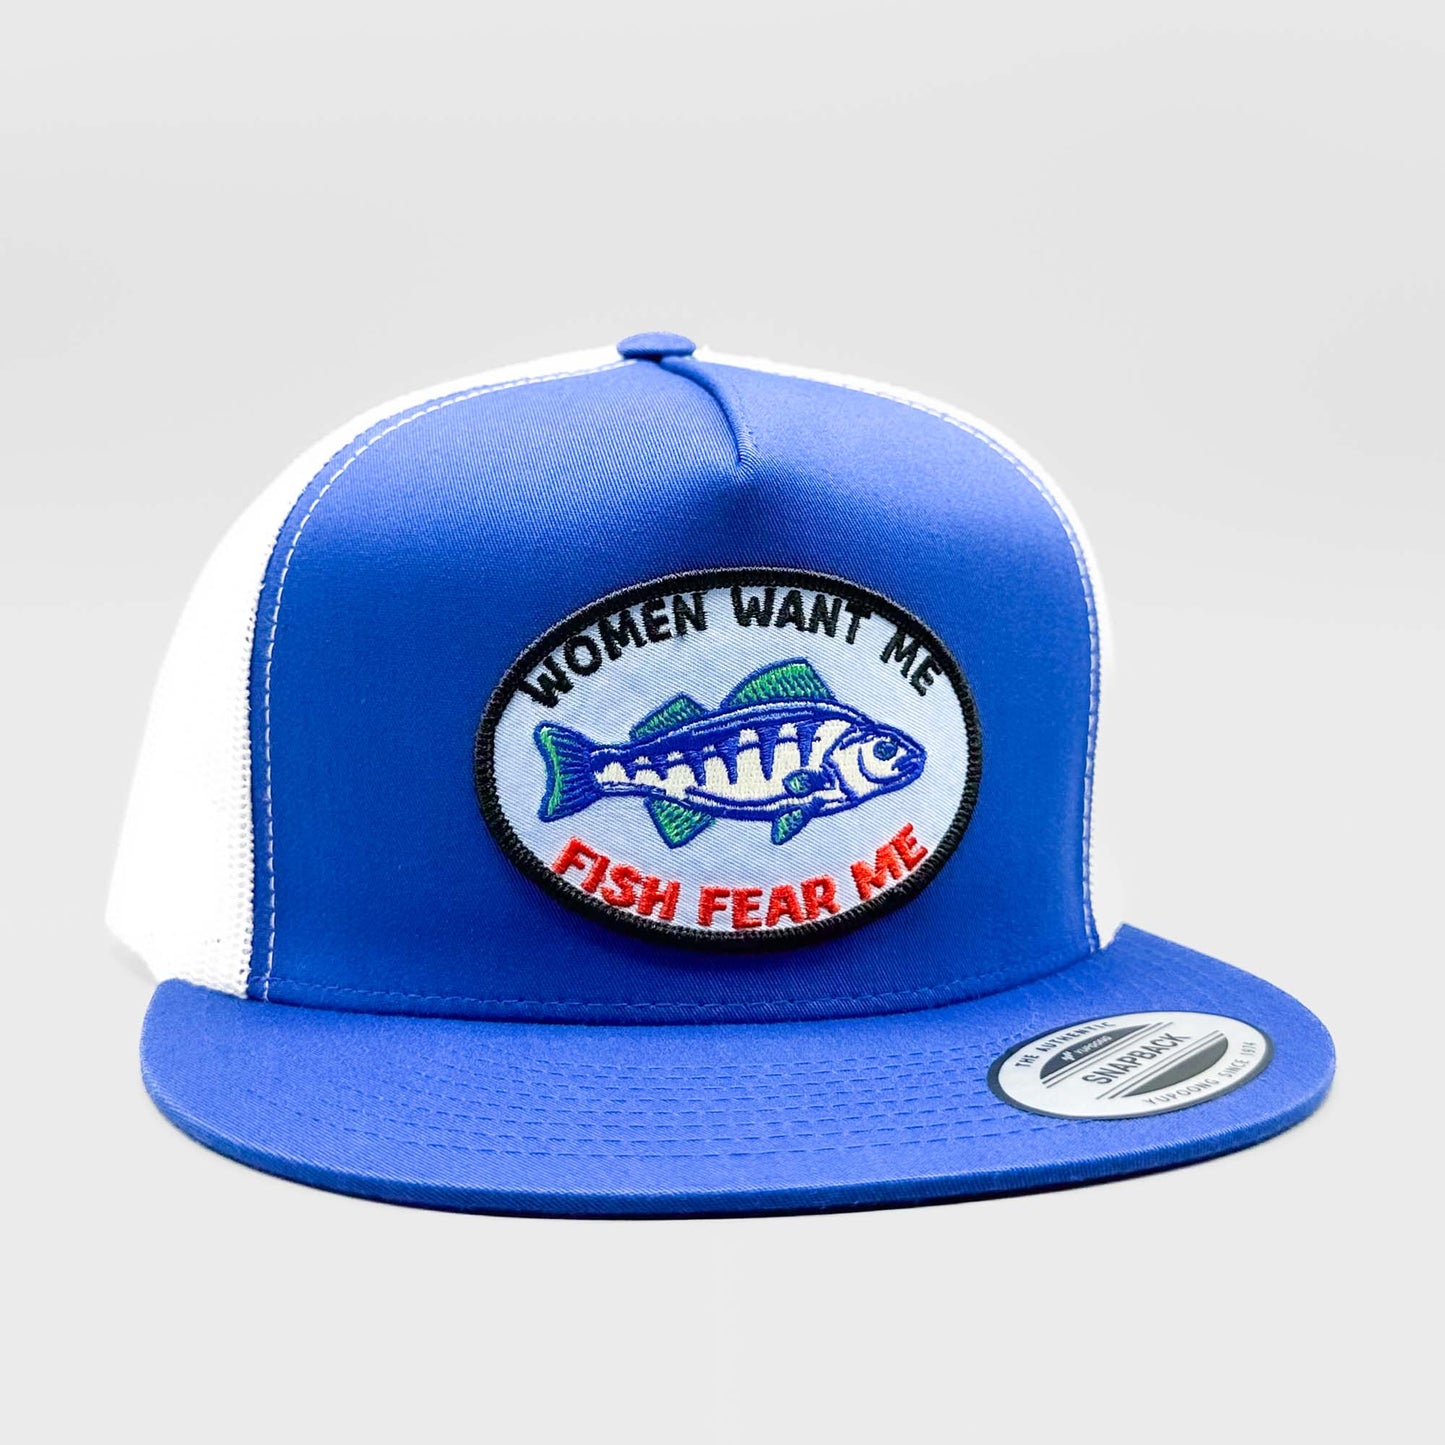 Women Want Me, Fish Fear Me Funny Fishing Trucker Hat